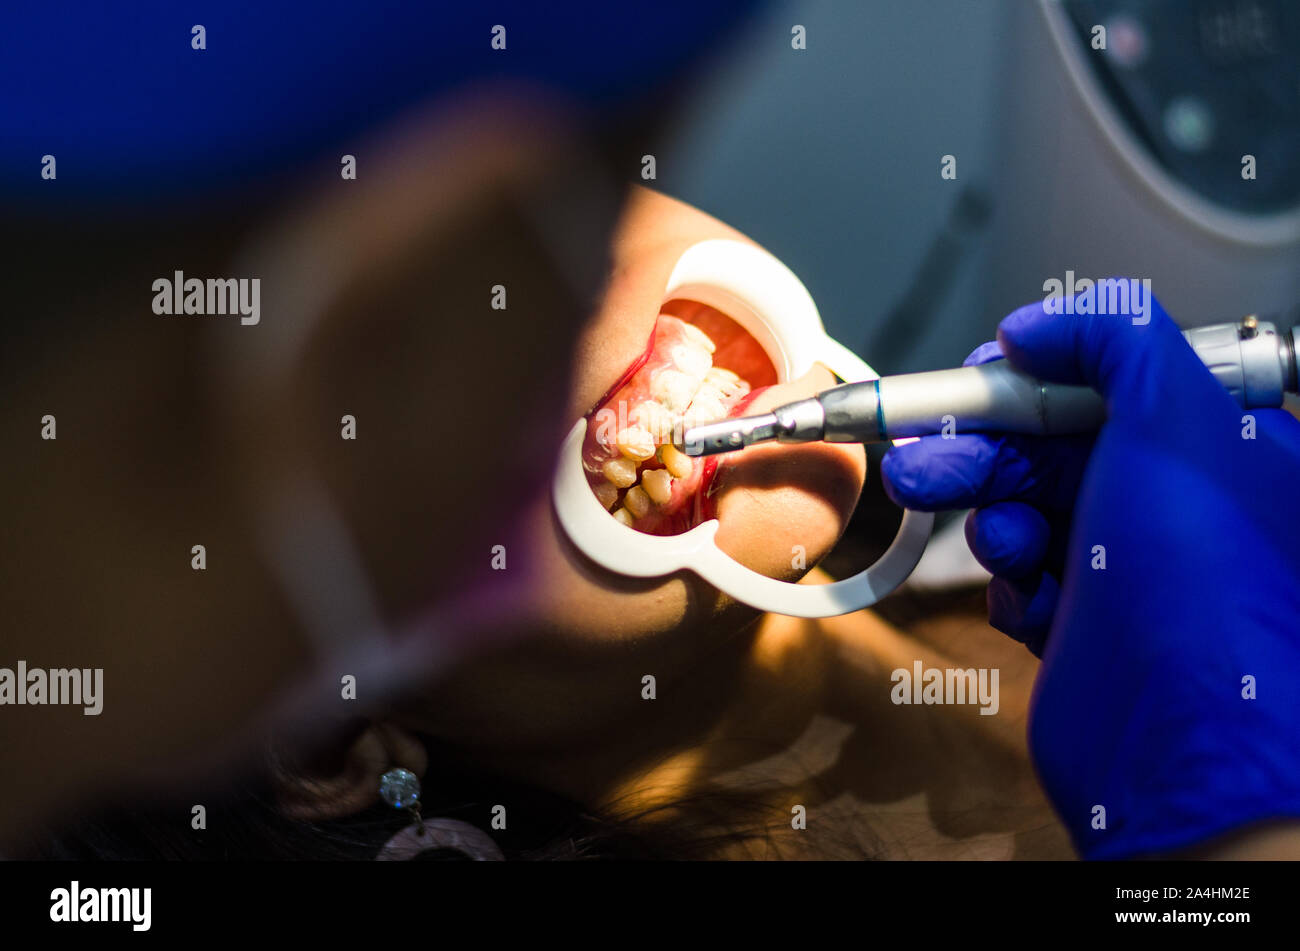 Odontologo immagini e fotografie stock ad alta risoluzione - Alamy